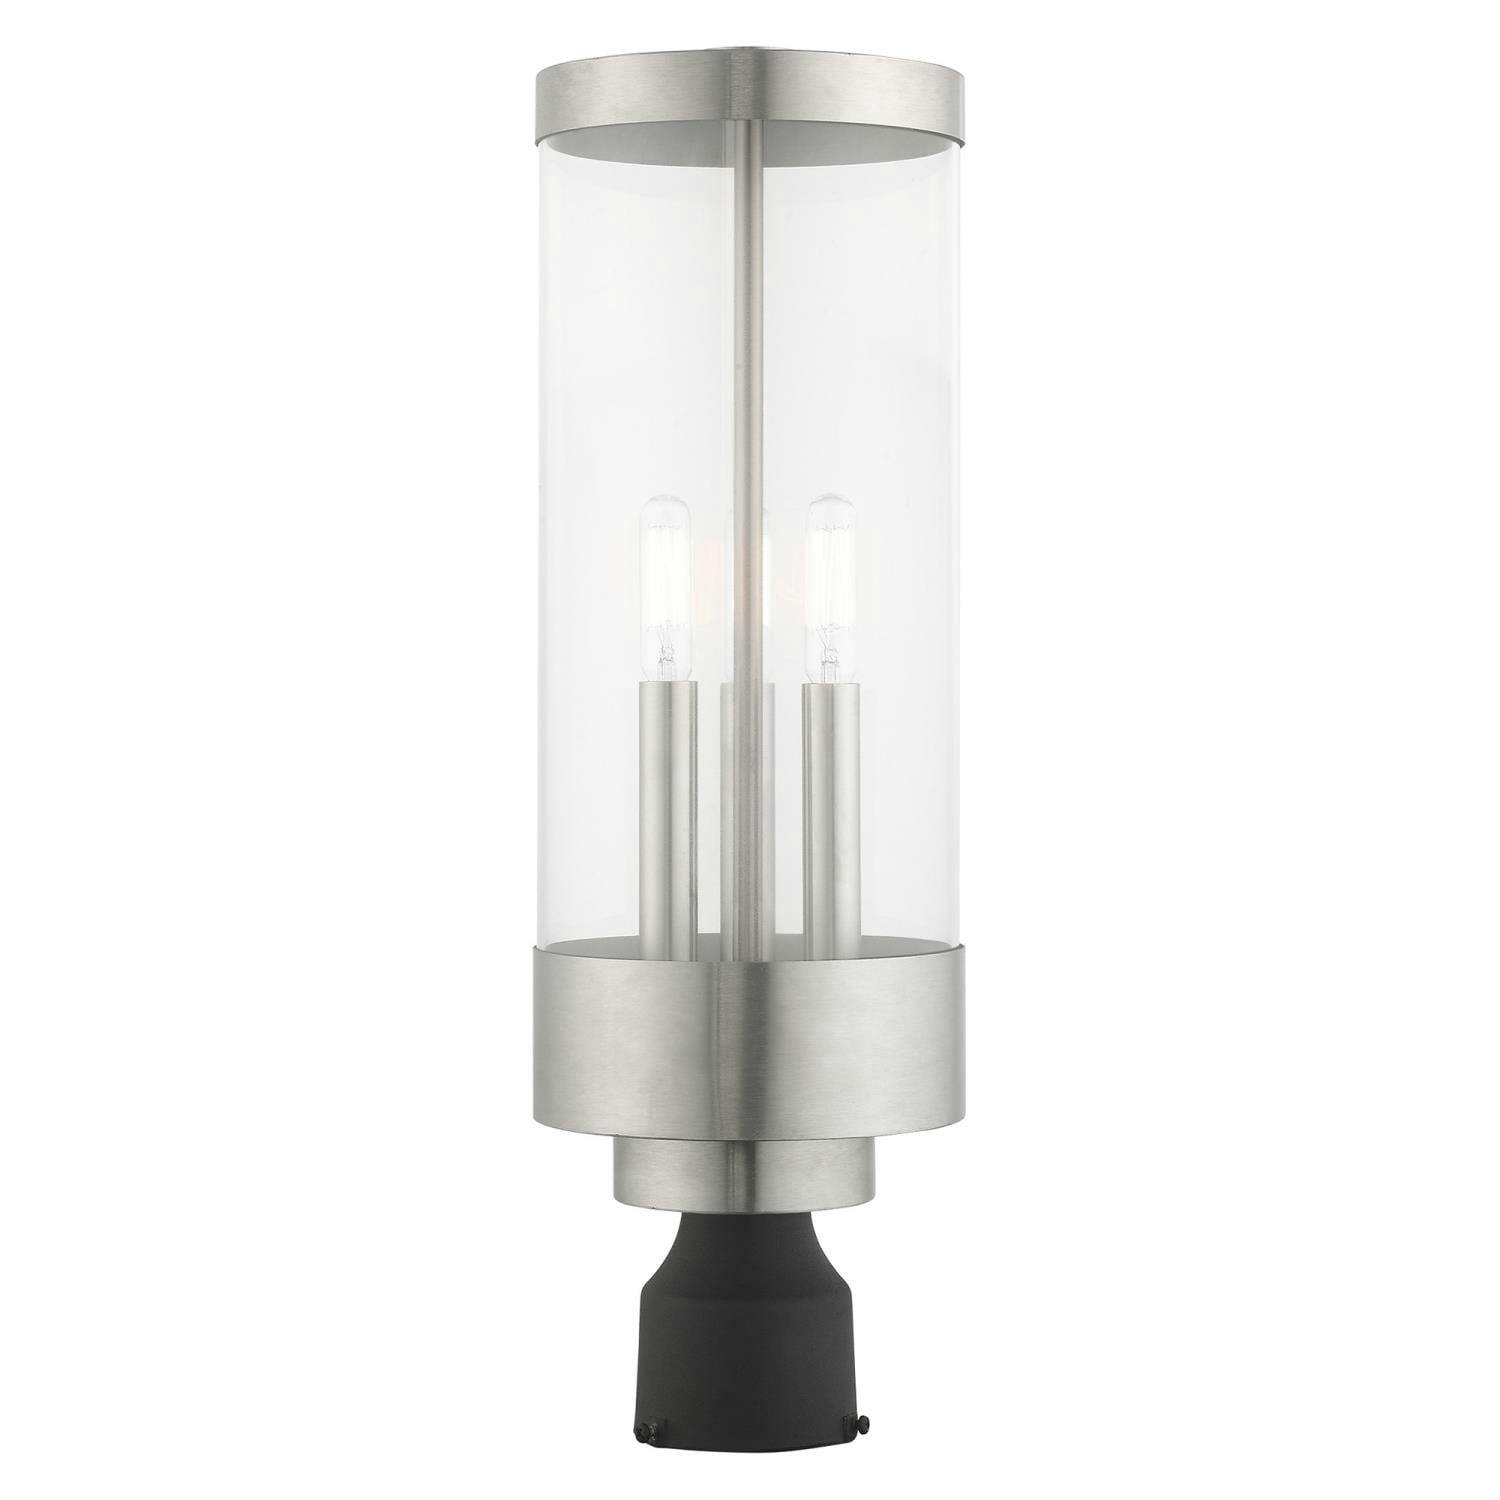 Hillcrest Elegance 3-Light Brushed Nickel Outdoor Post Lantern